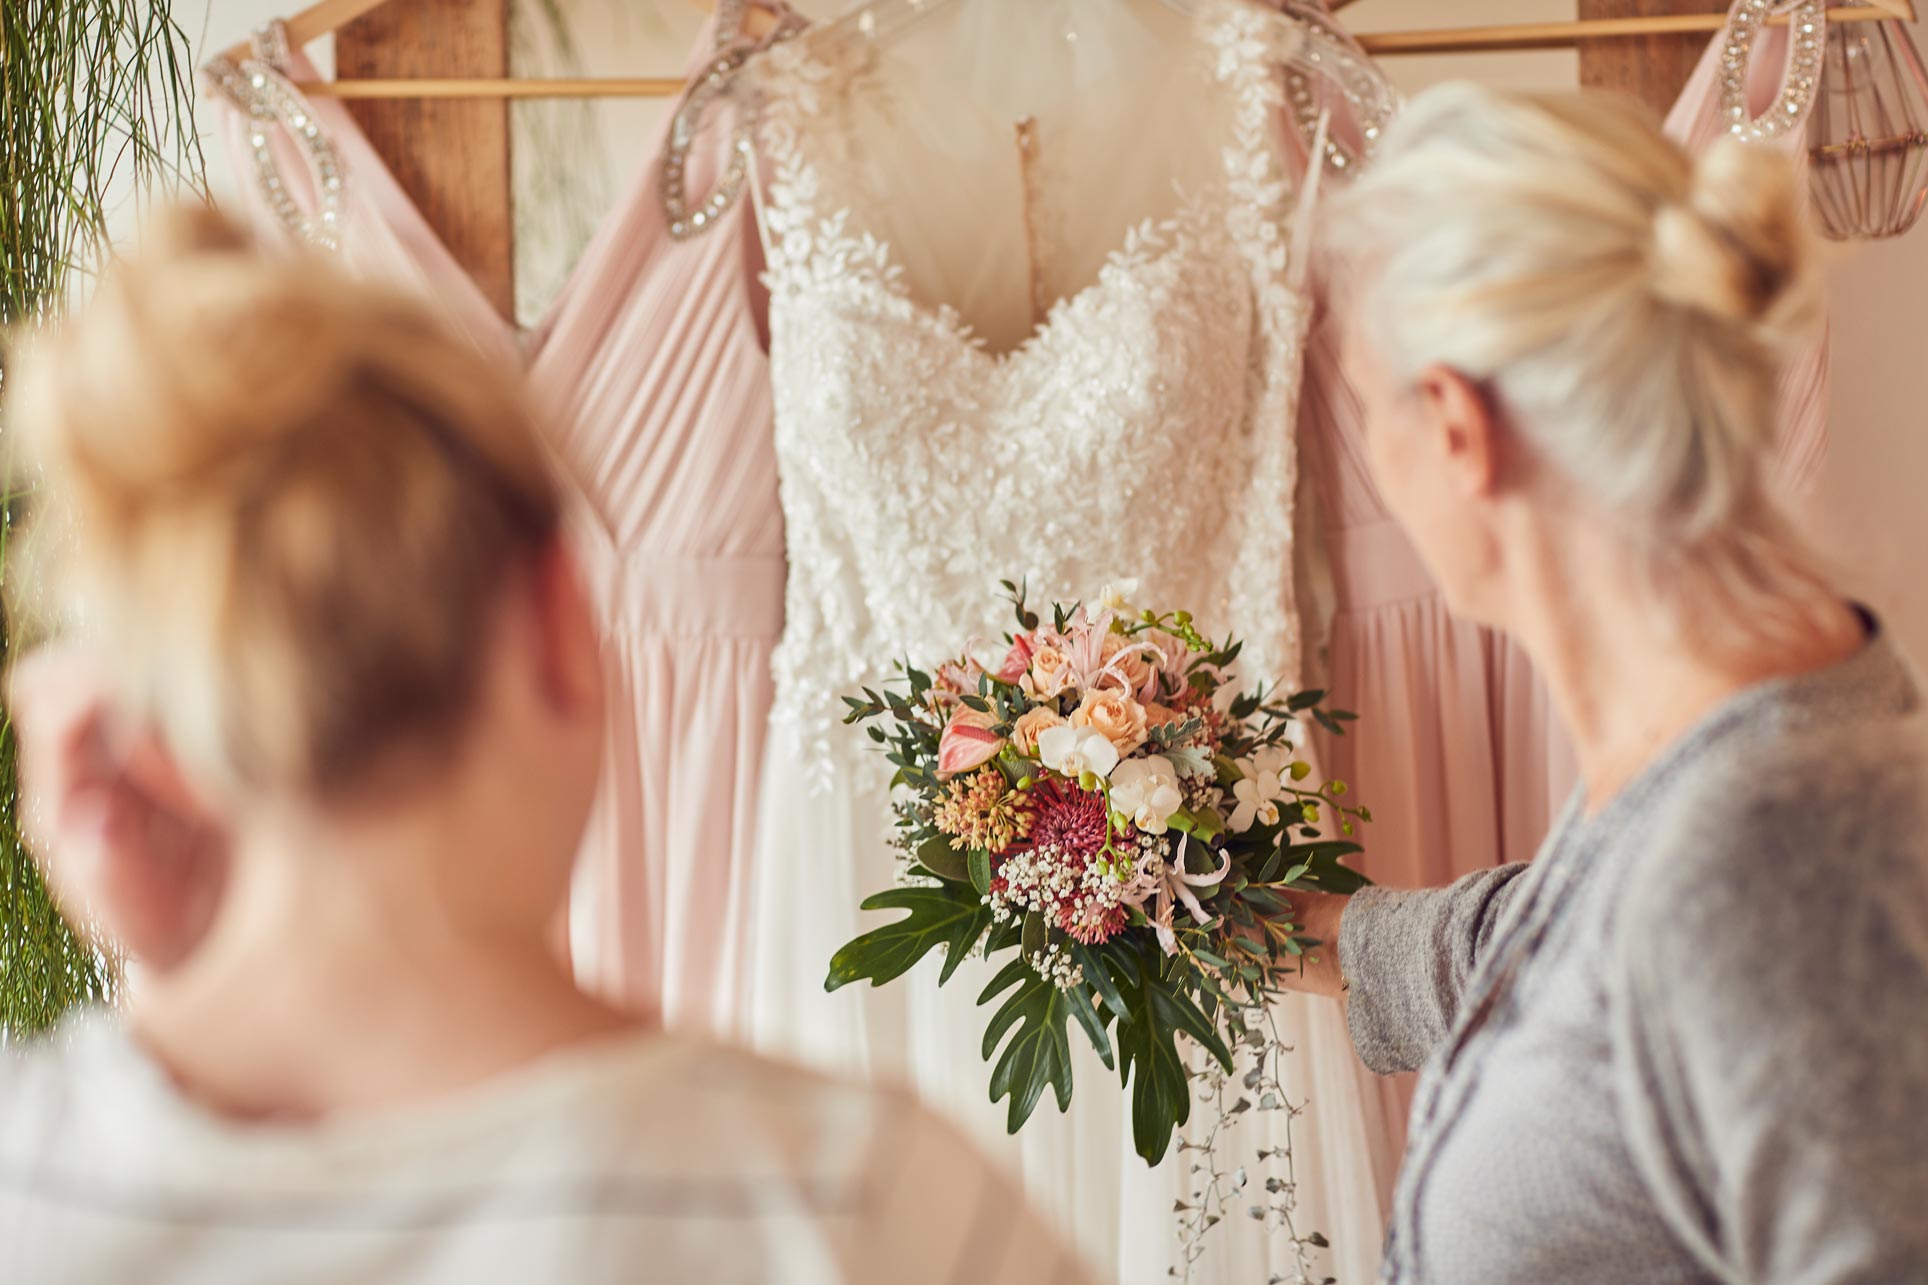 Blumen & Hochzeitskleid